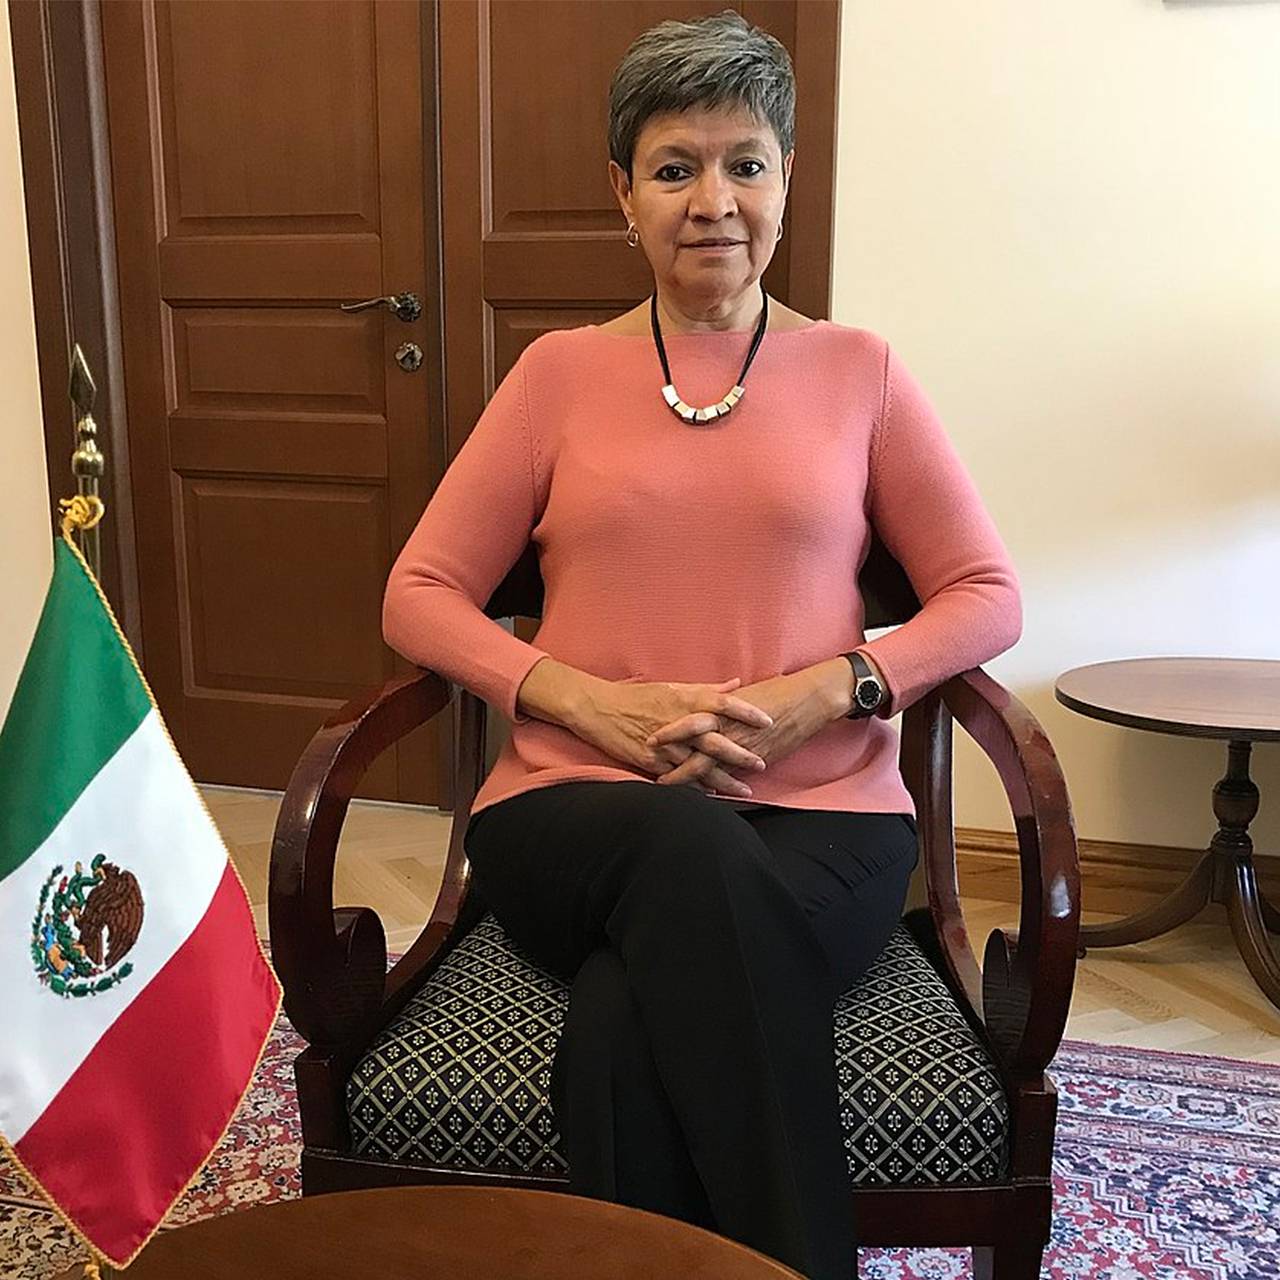 Посол мексики